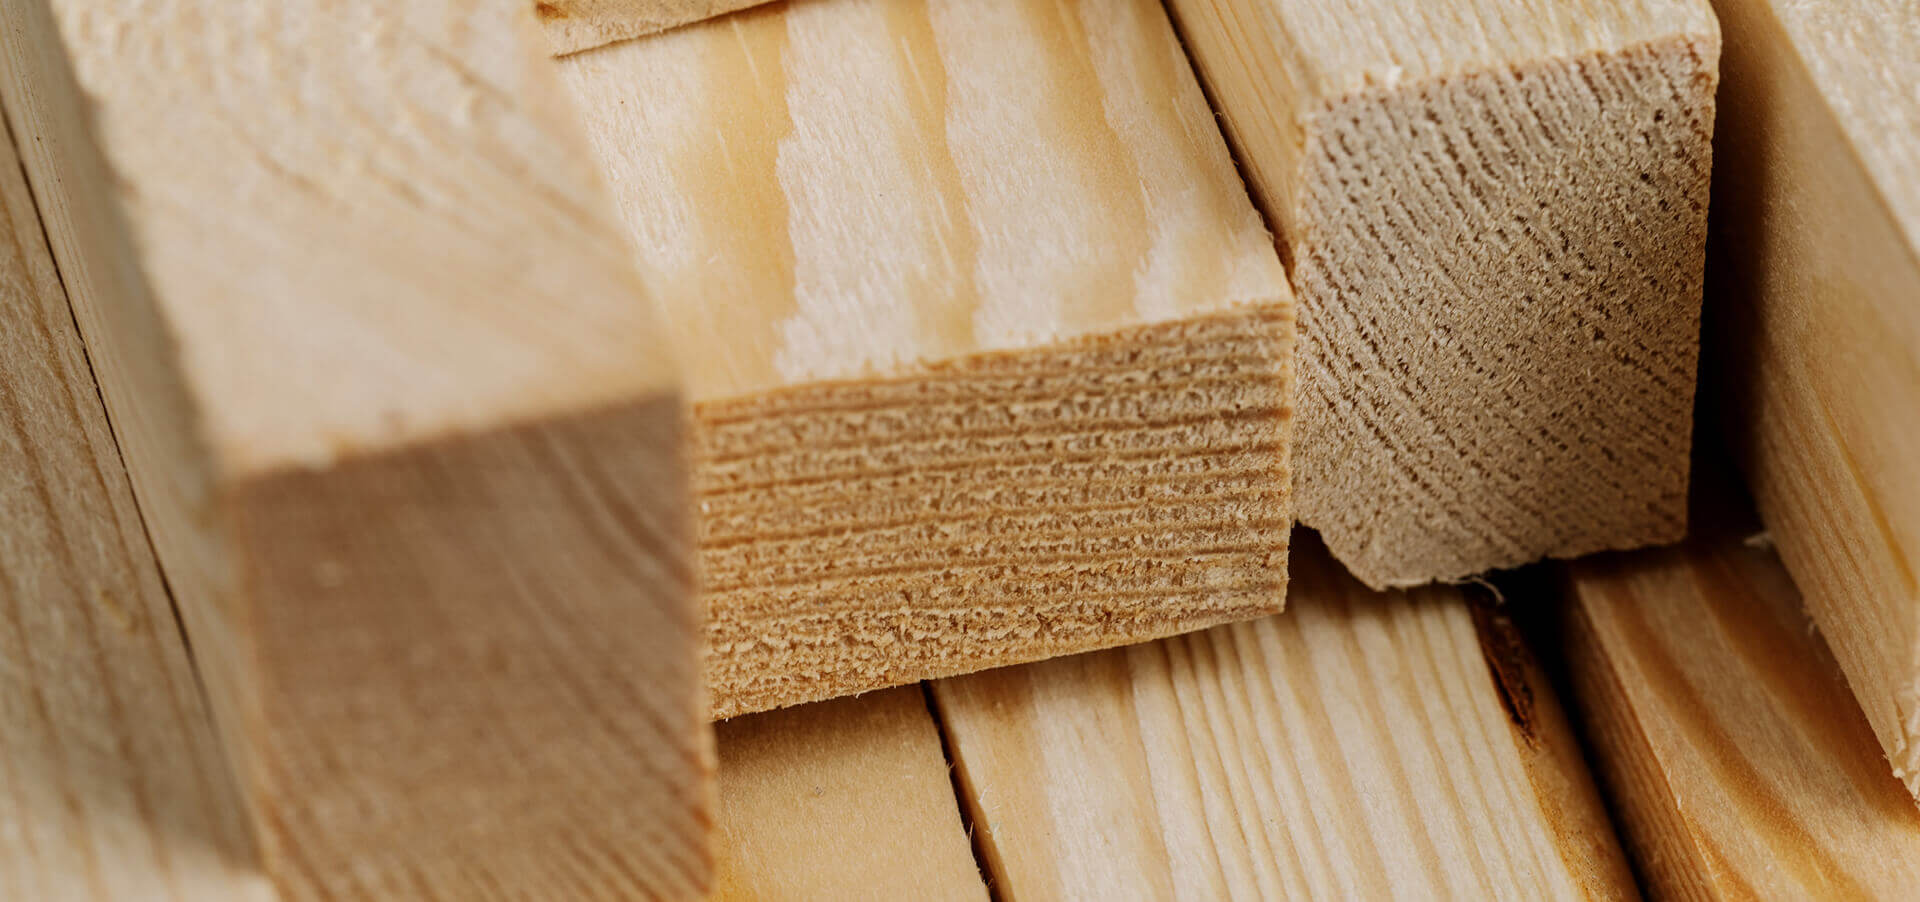 Hardwood suppliers in essex